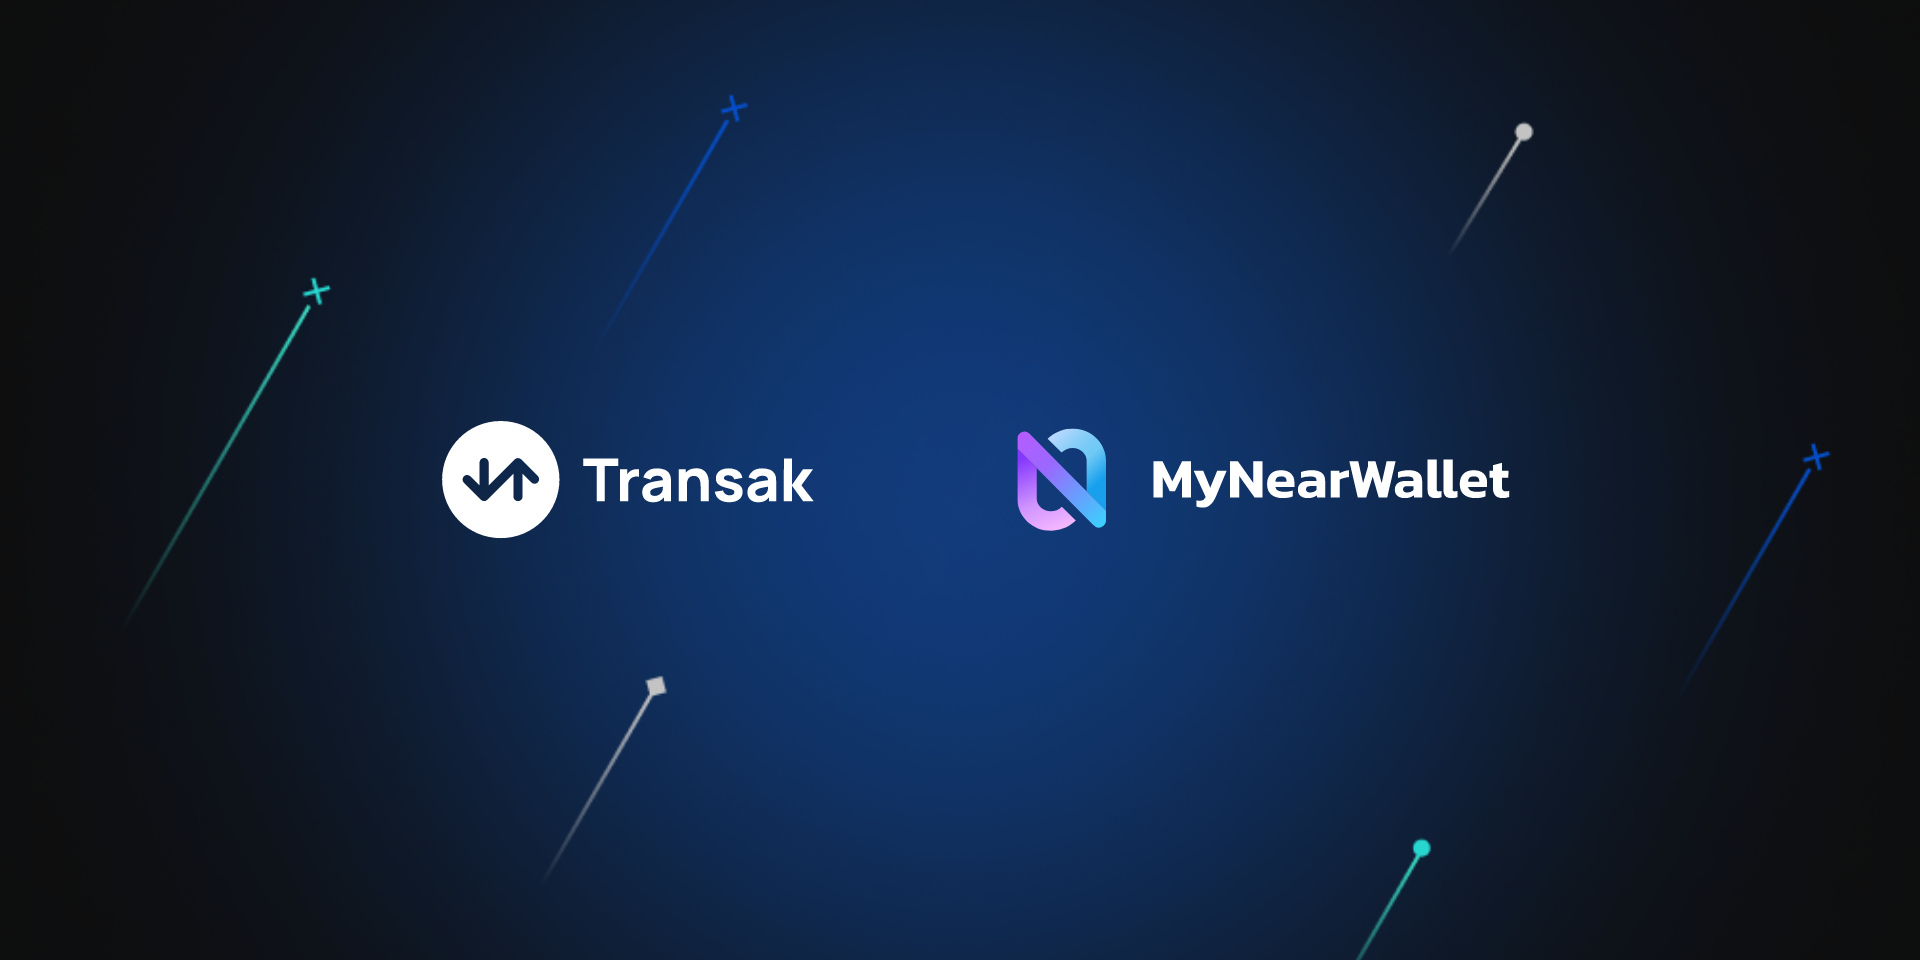 Onboard to MyNearWallet with card using Transak